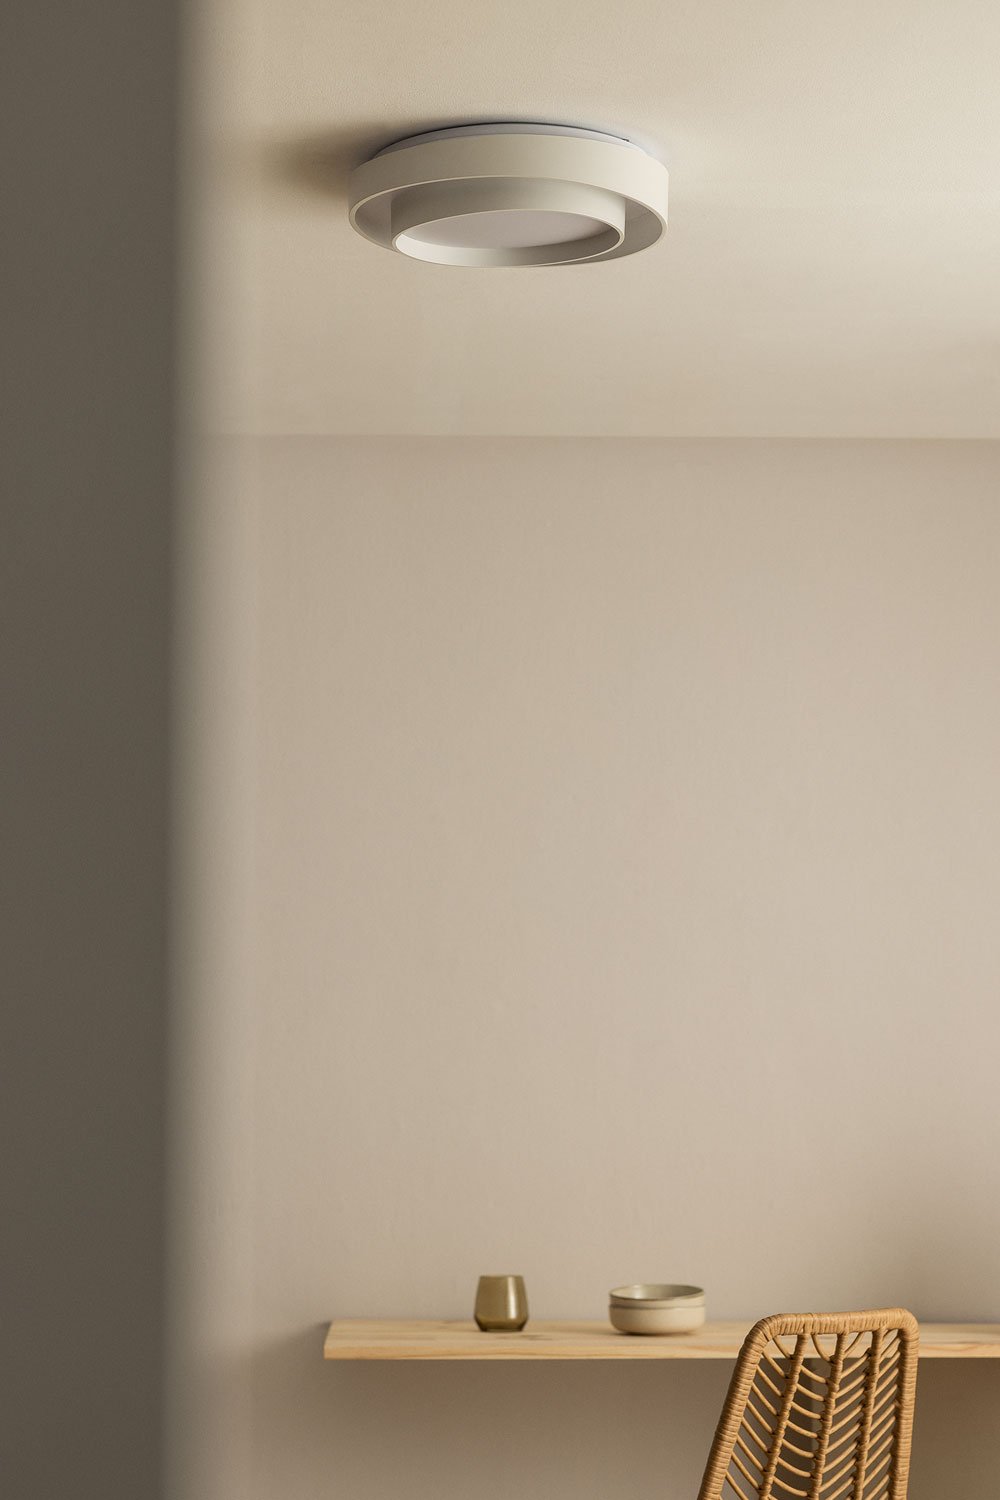 LED-plafondlamp in methacrylaat en metaal Siobam, galerij beeld 1